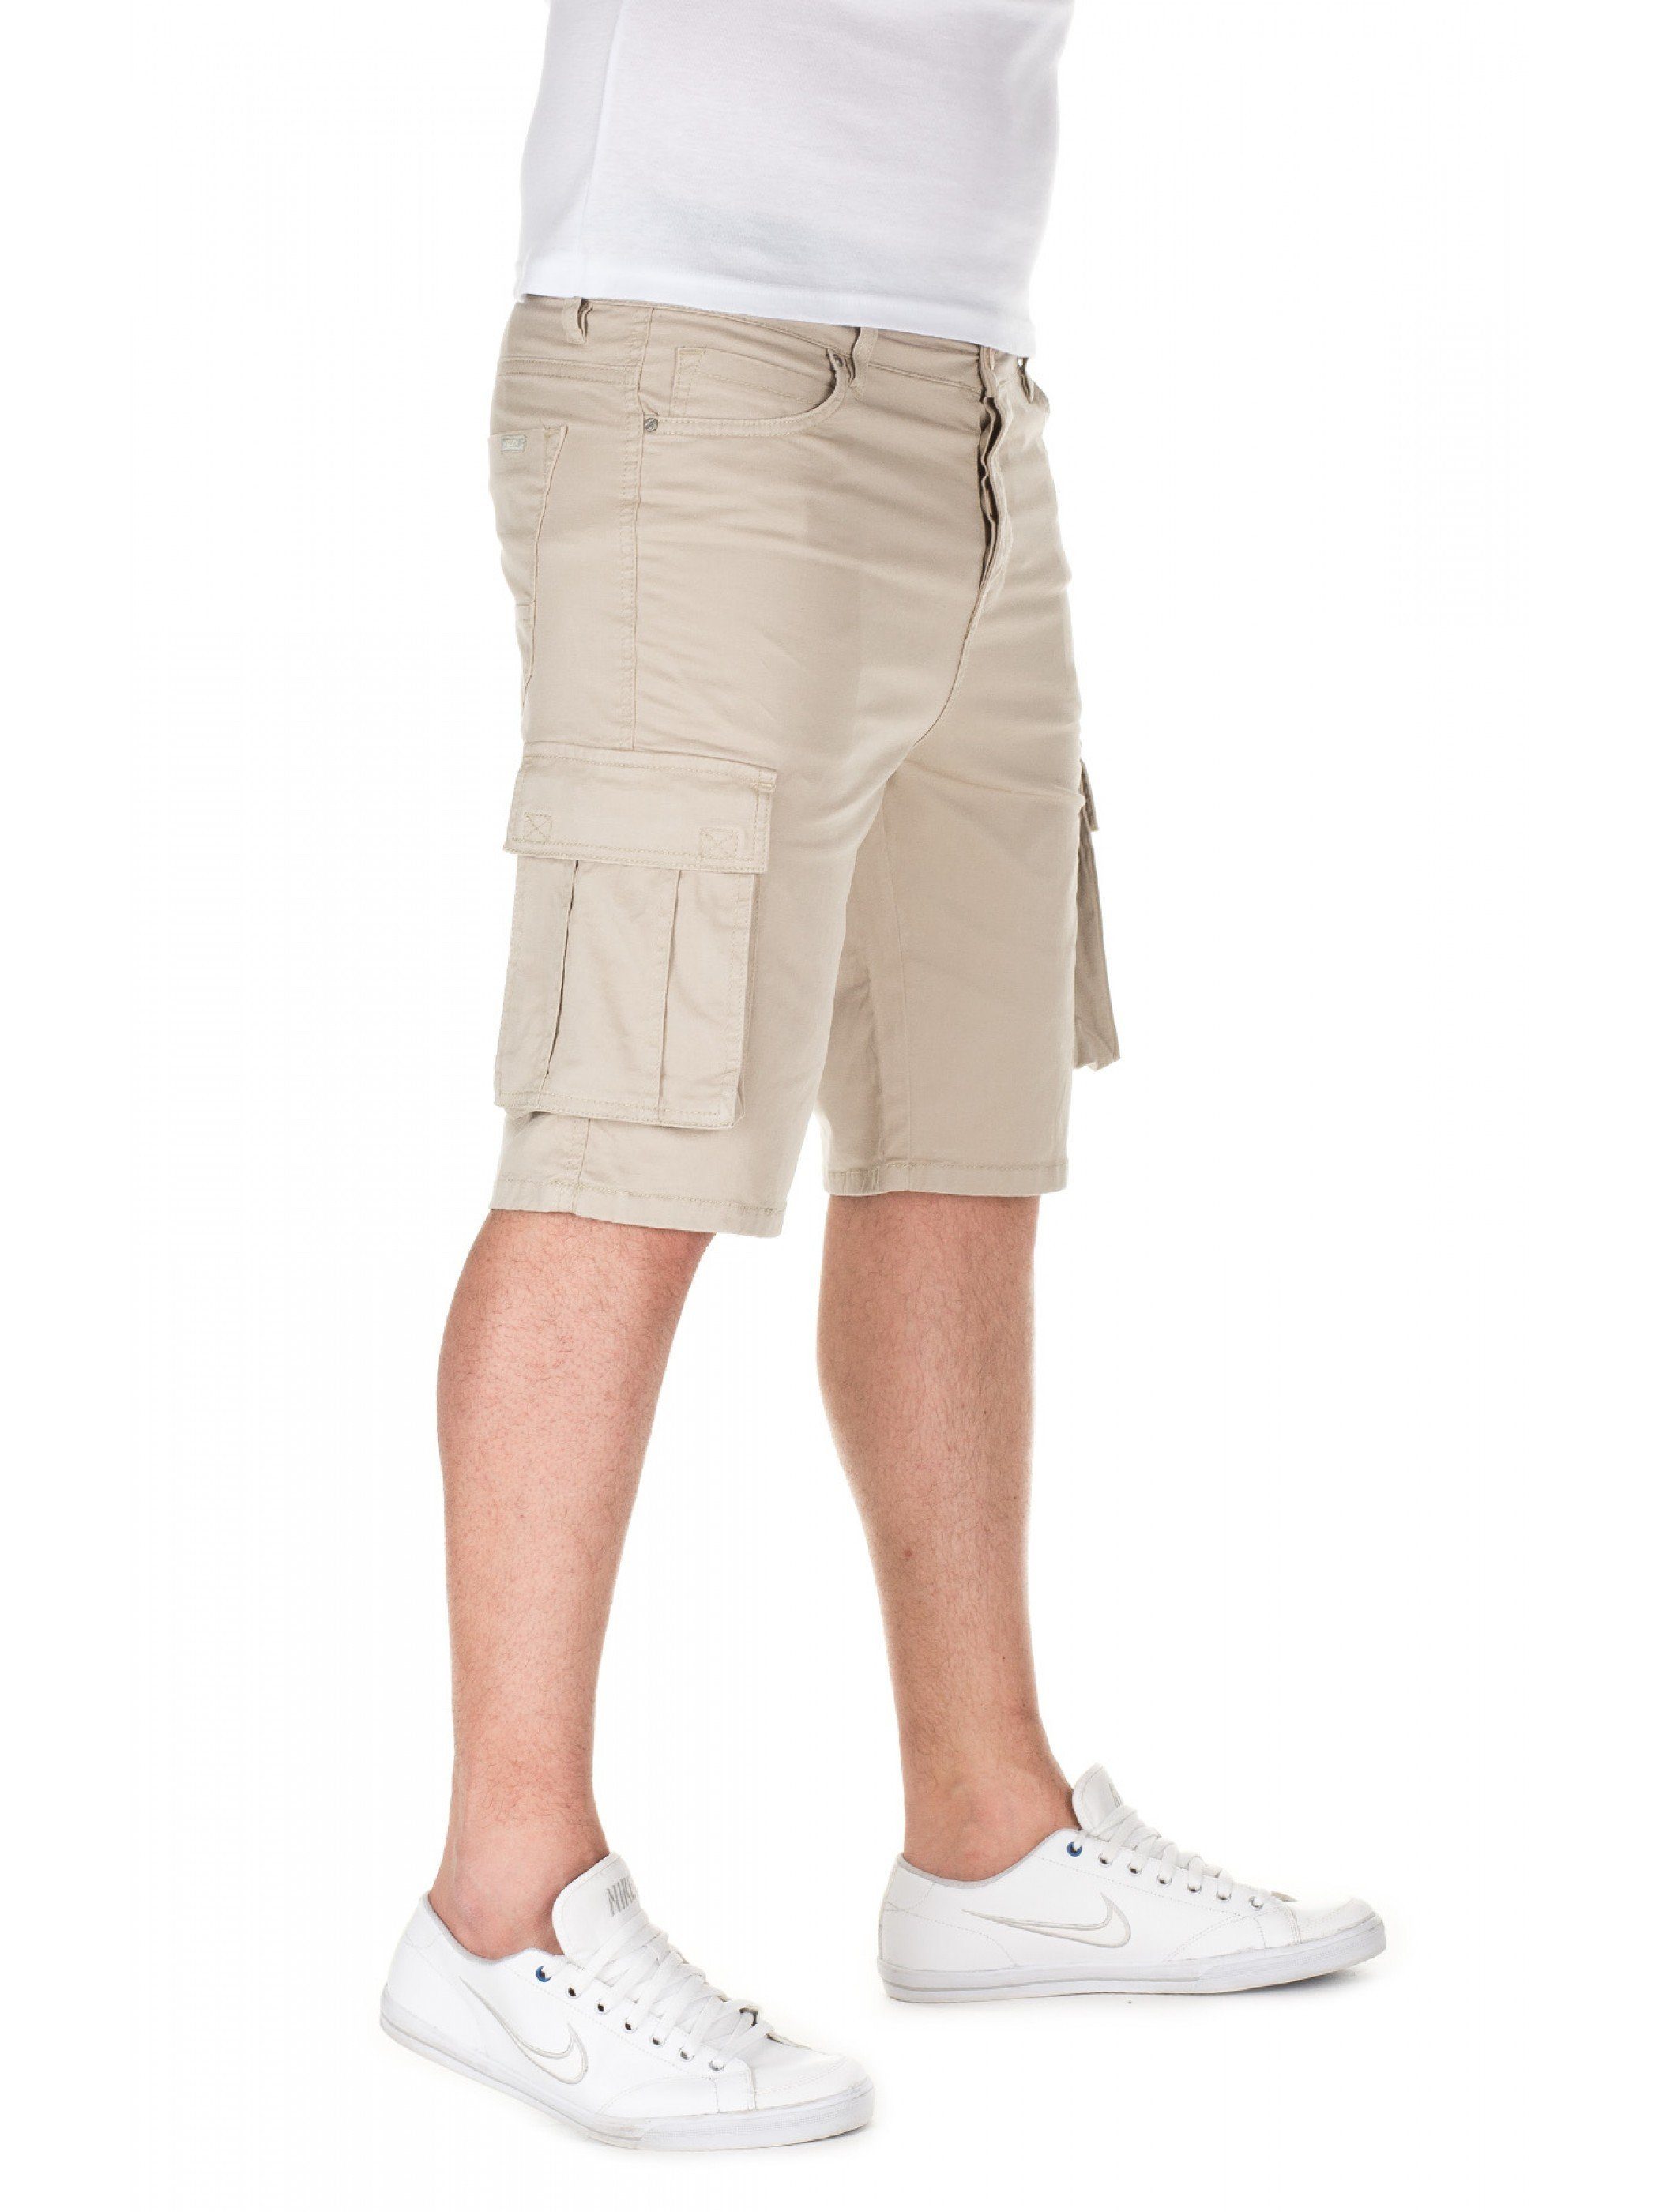 Shorts Shorts ( Yazubi Natur Taric Chino 3002) beige